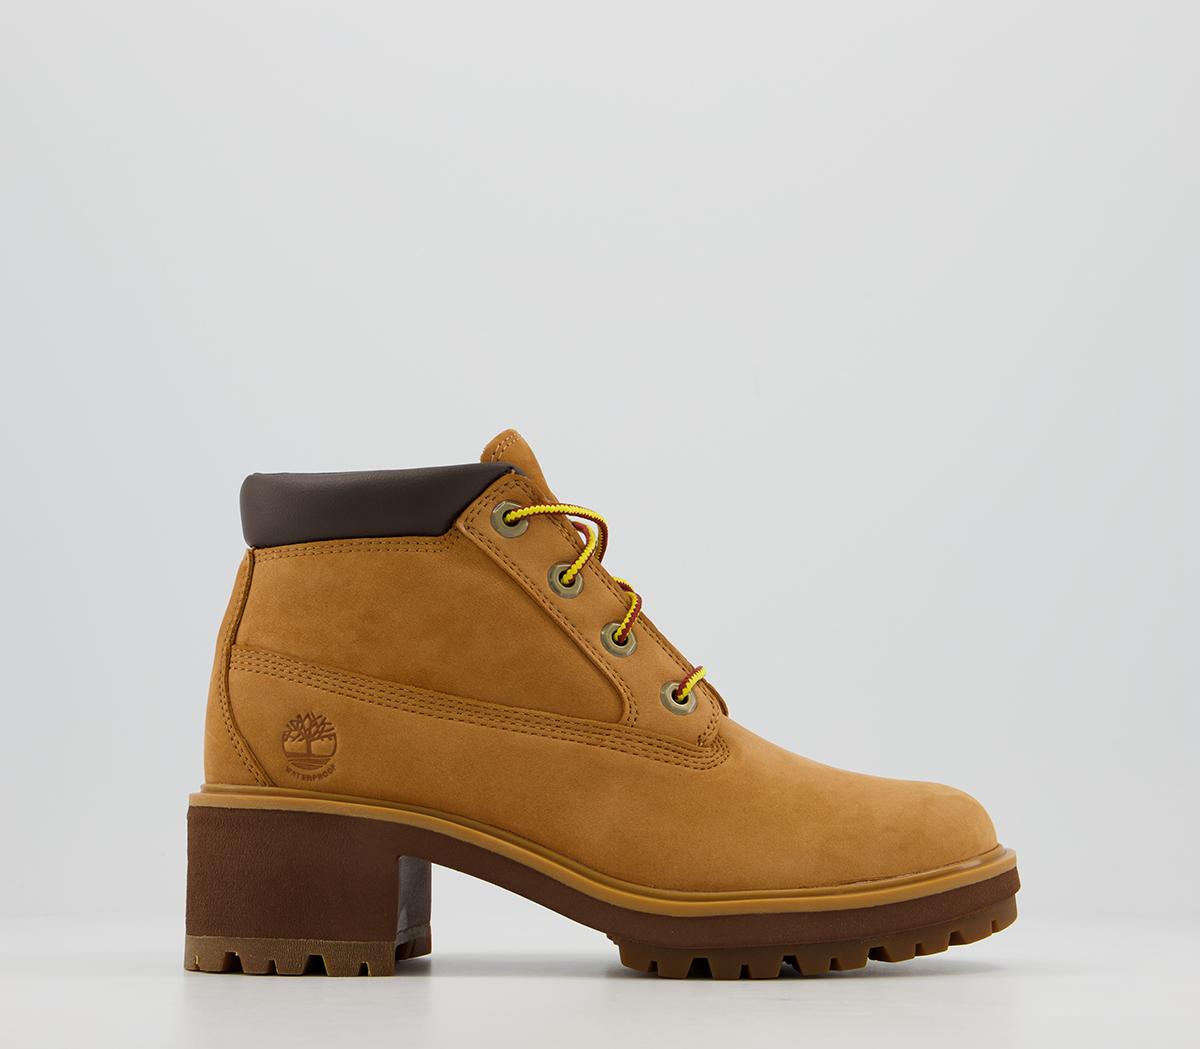 wheat chukka boots